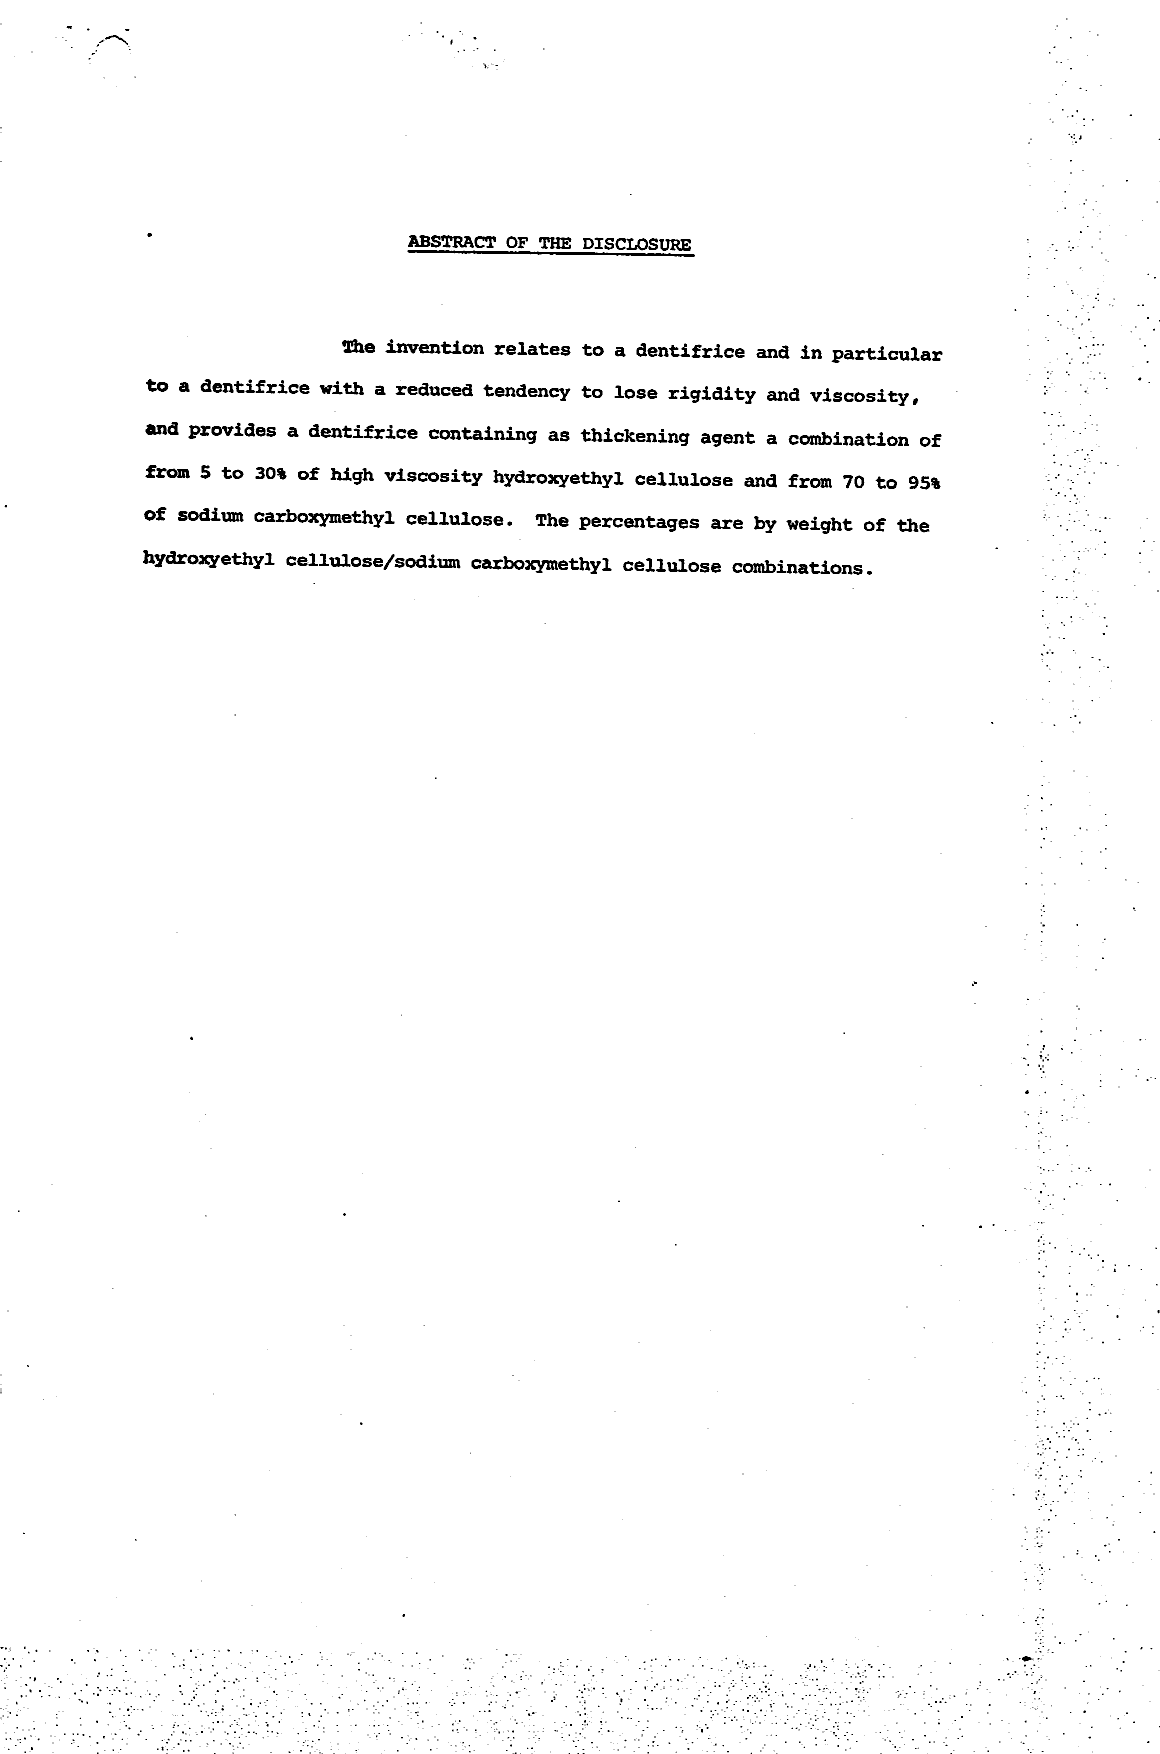 Document de brevet canadien 1028958. Abrégé 19940509. Image 1 de 1